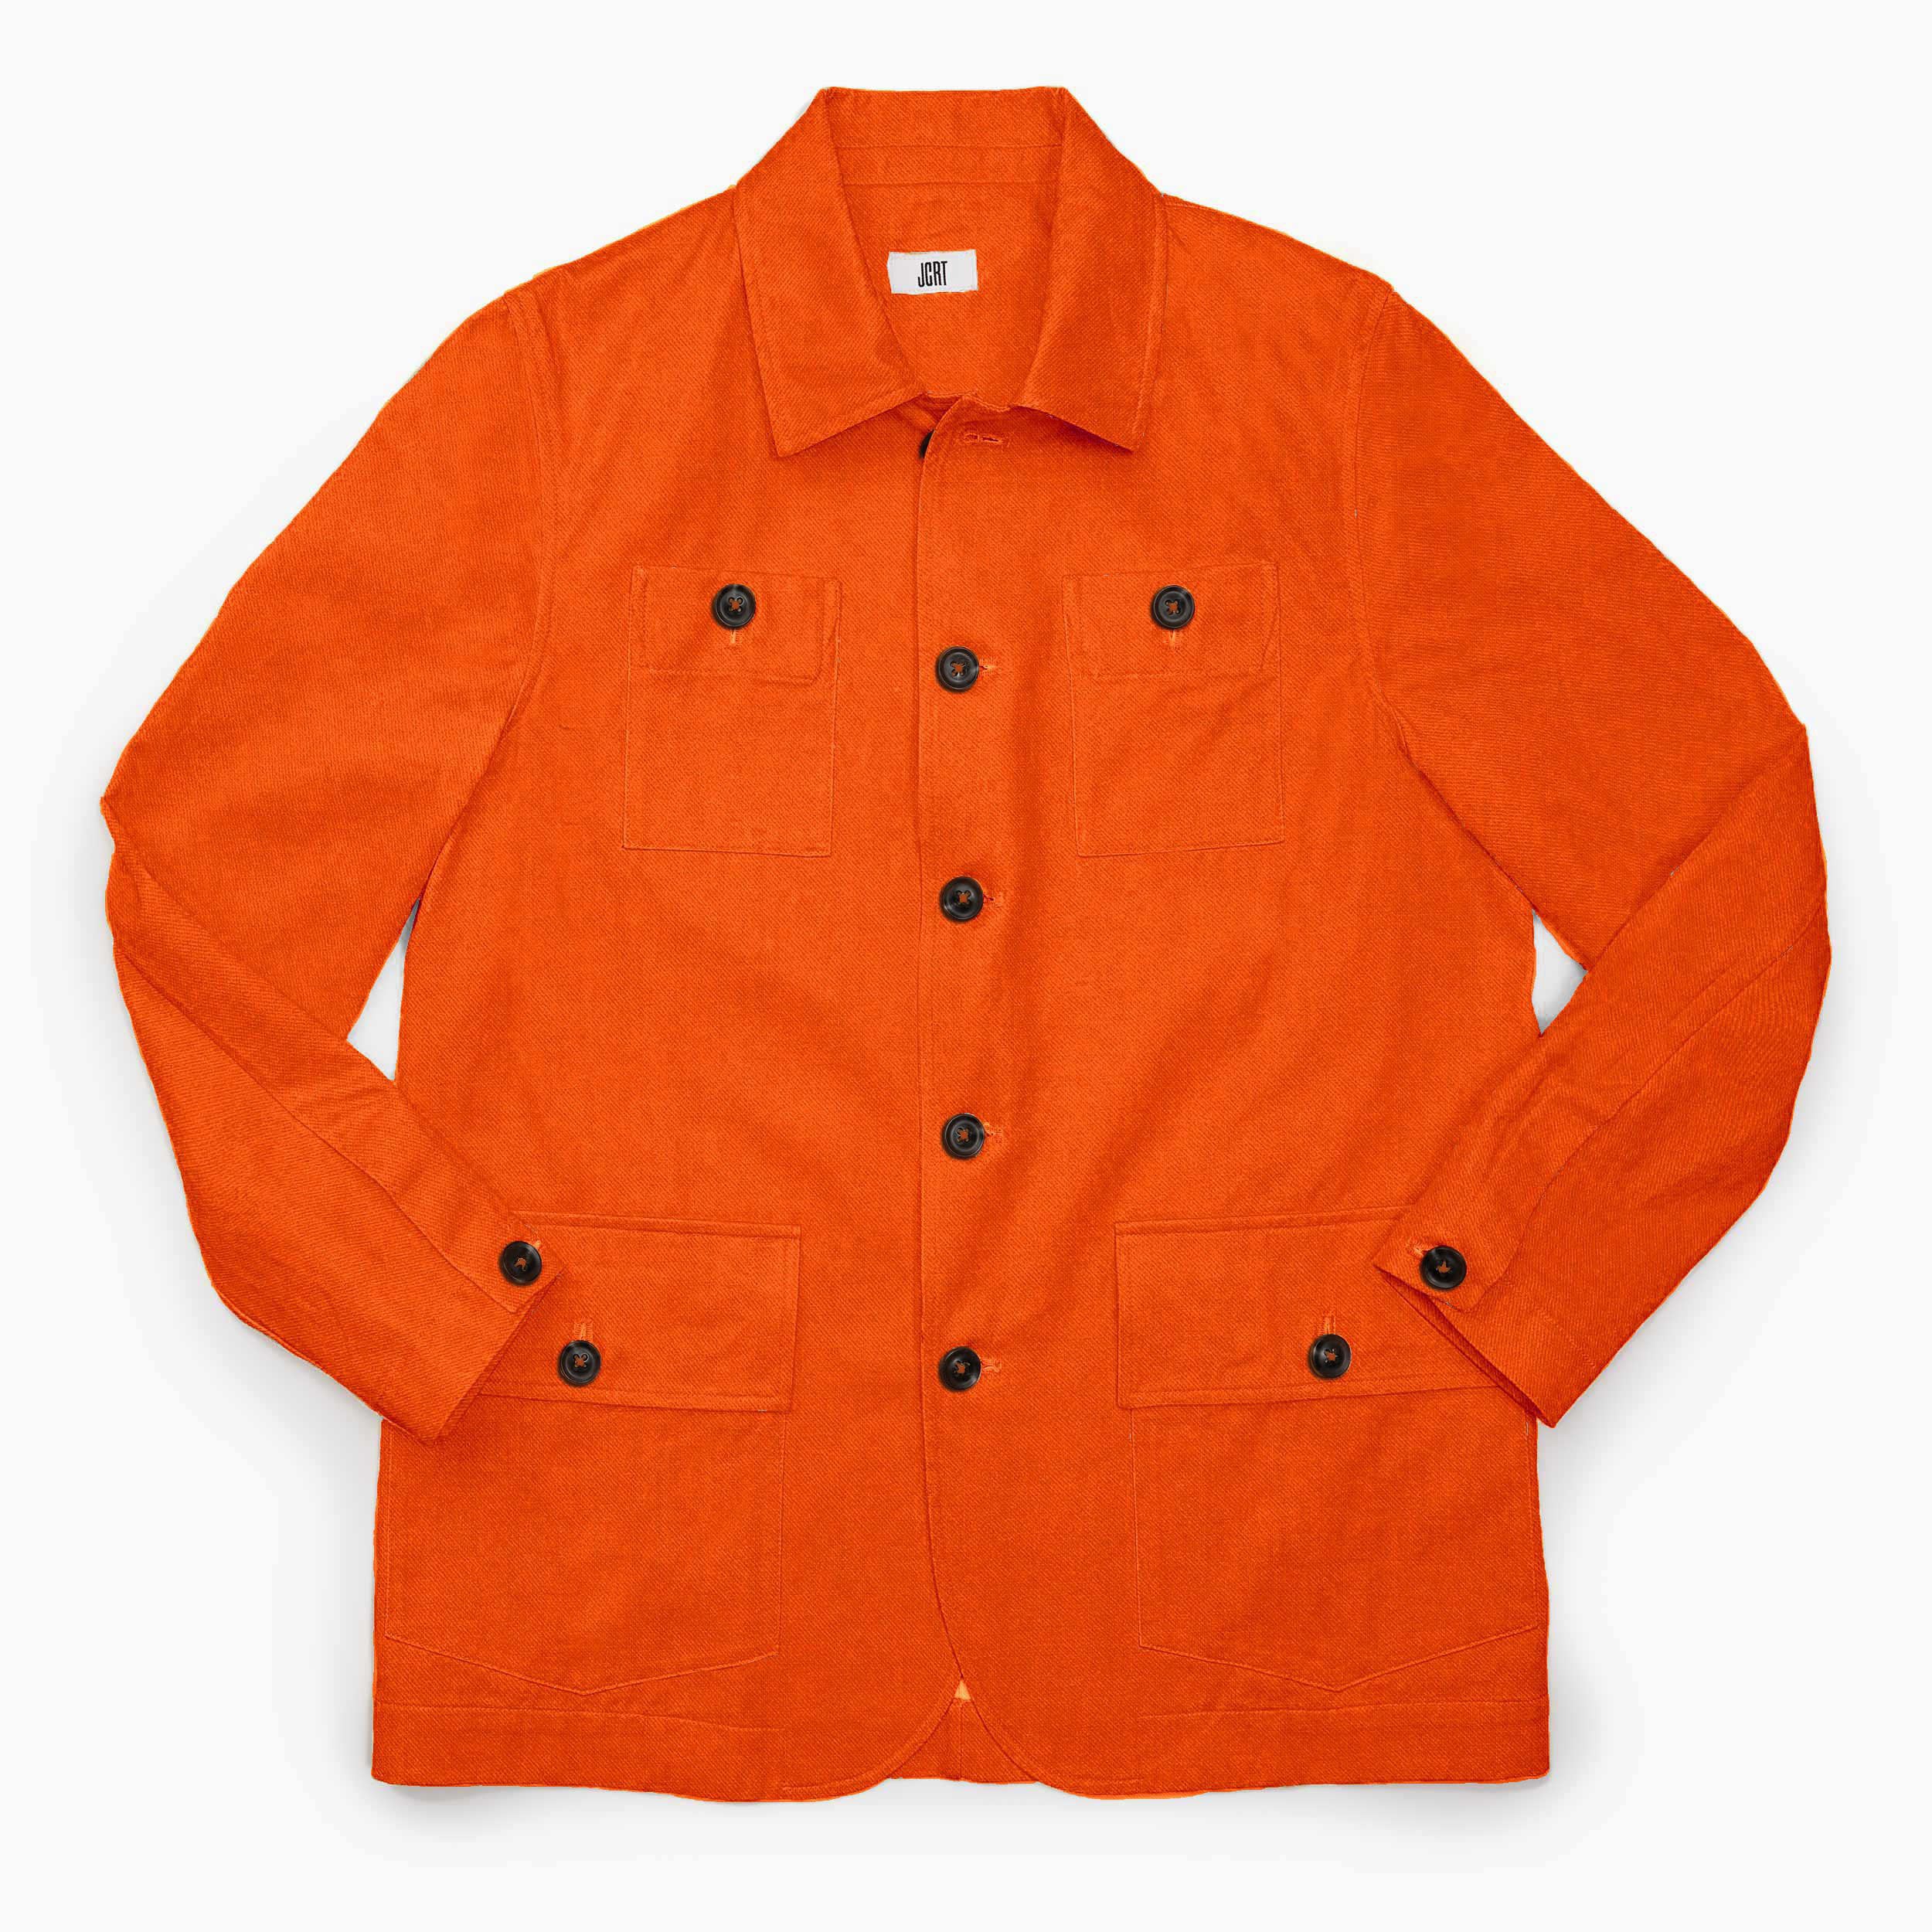 The Safety Orange Twill Chore Coat